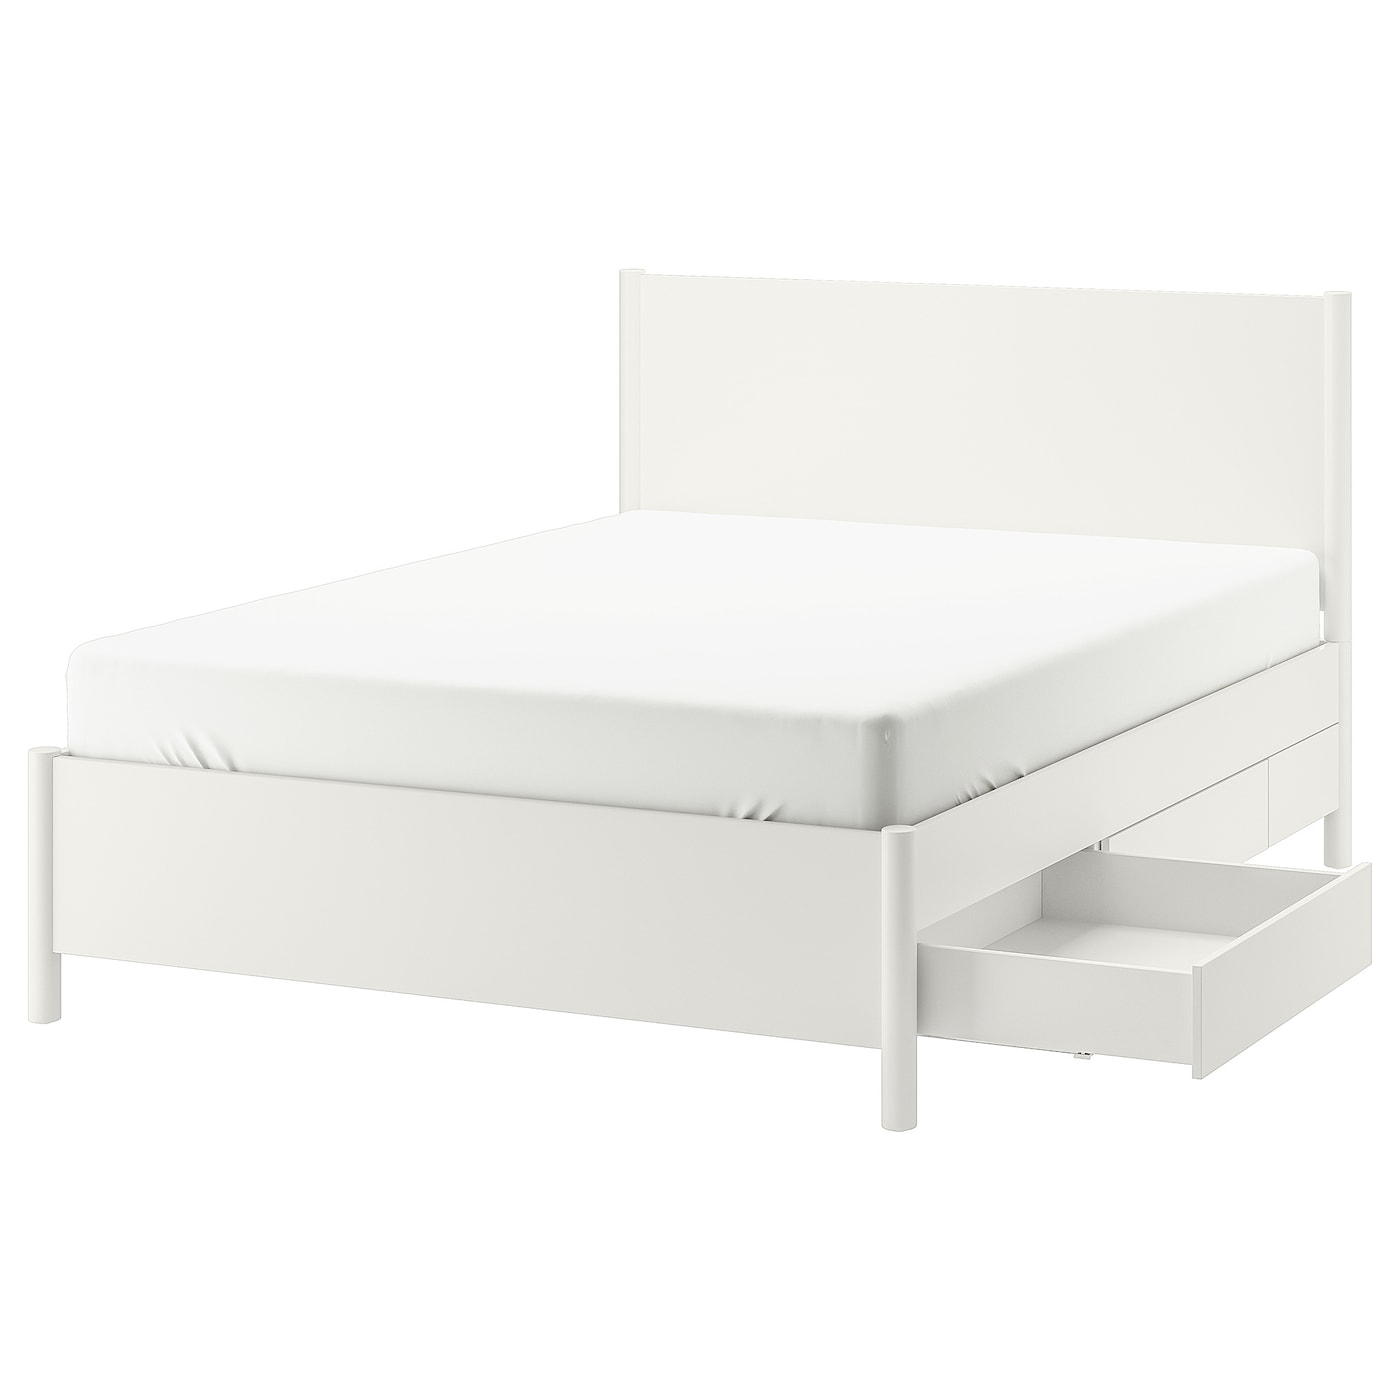 Каркас кровати - TONSTAD IKEA/ ТОНСТАД ИКЕА,  209х149 см, белый